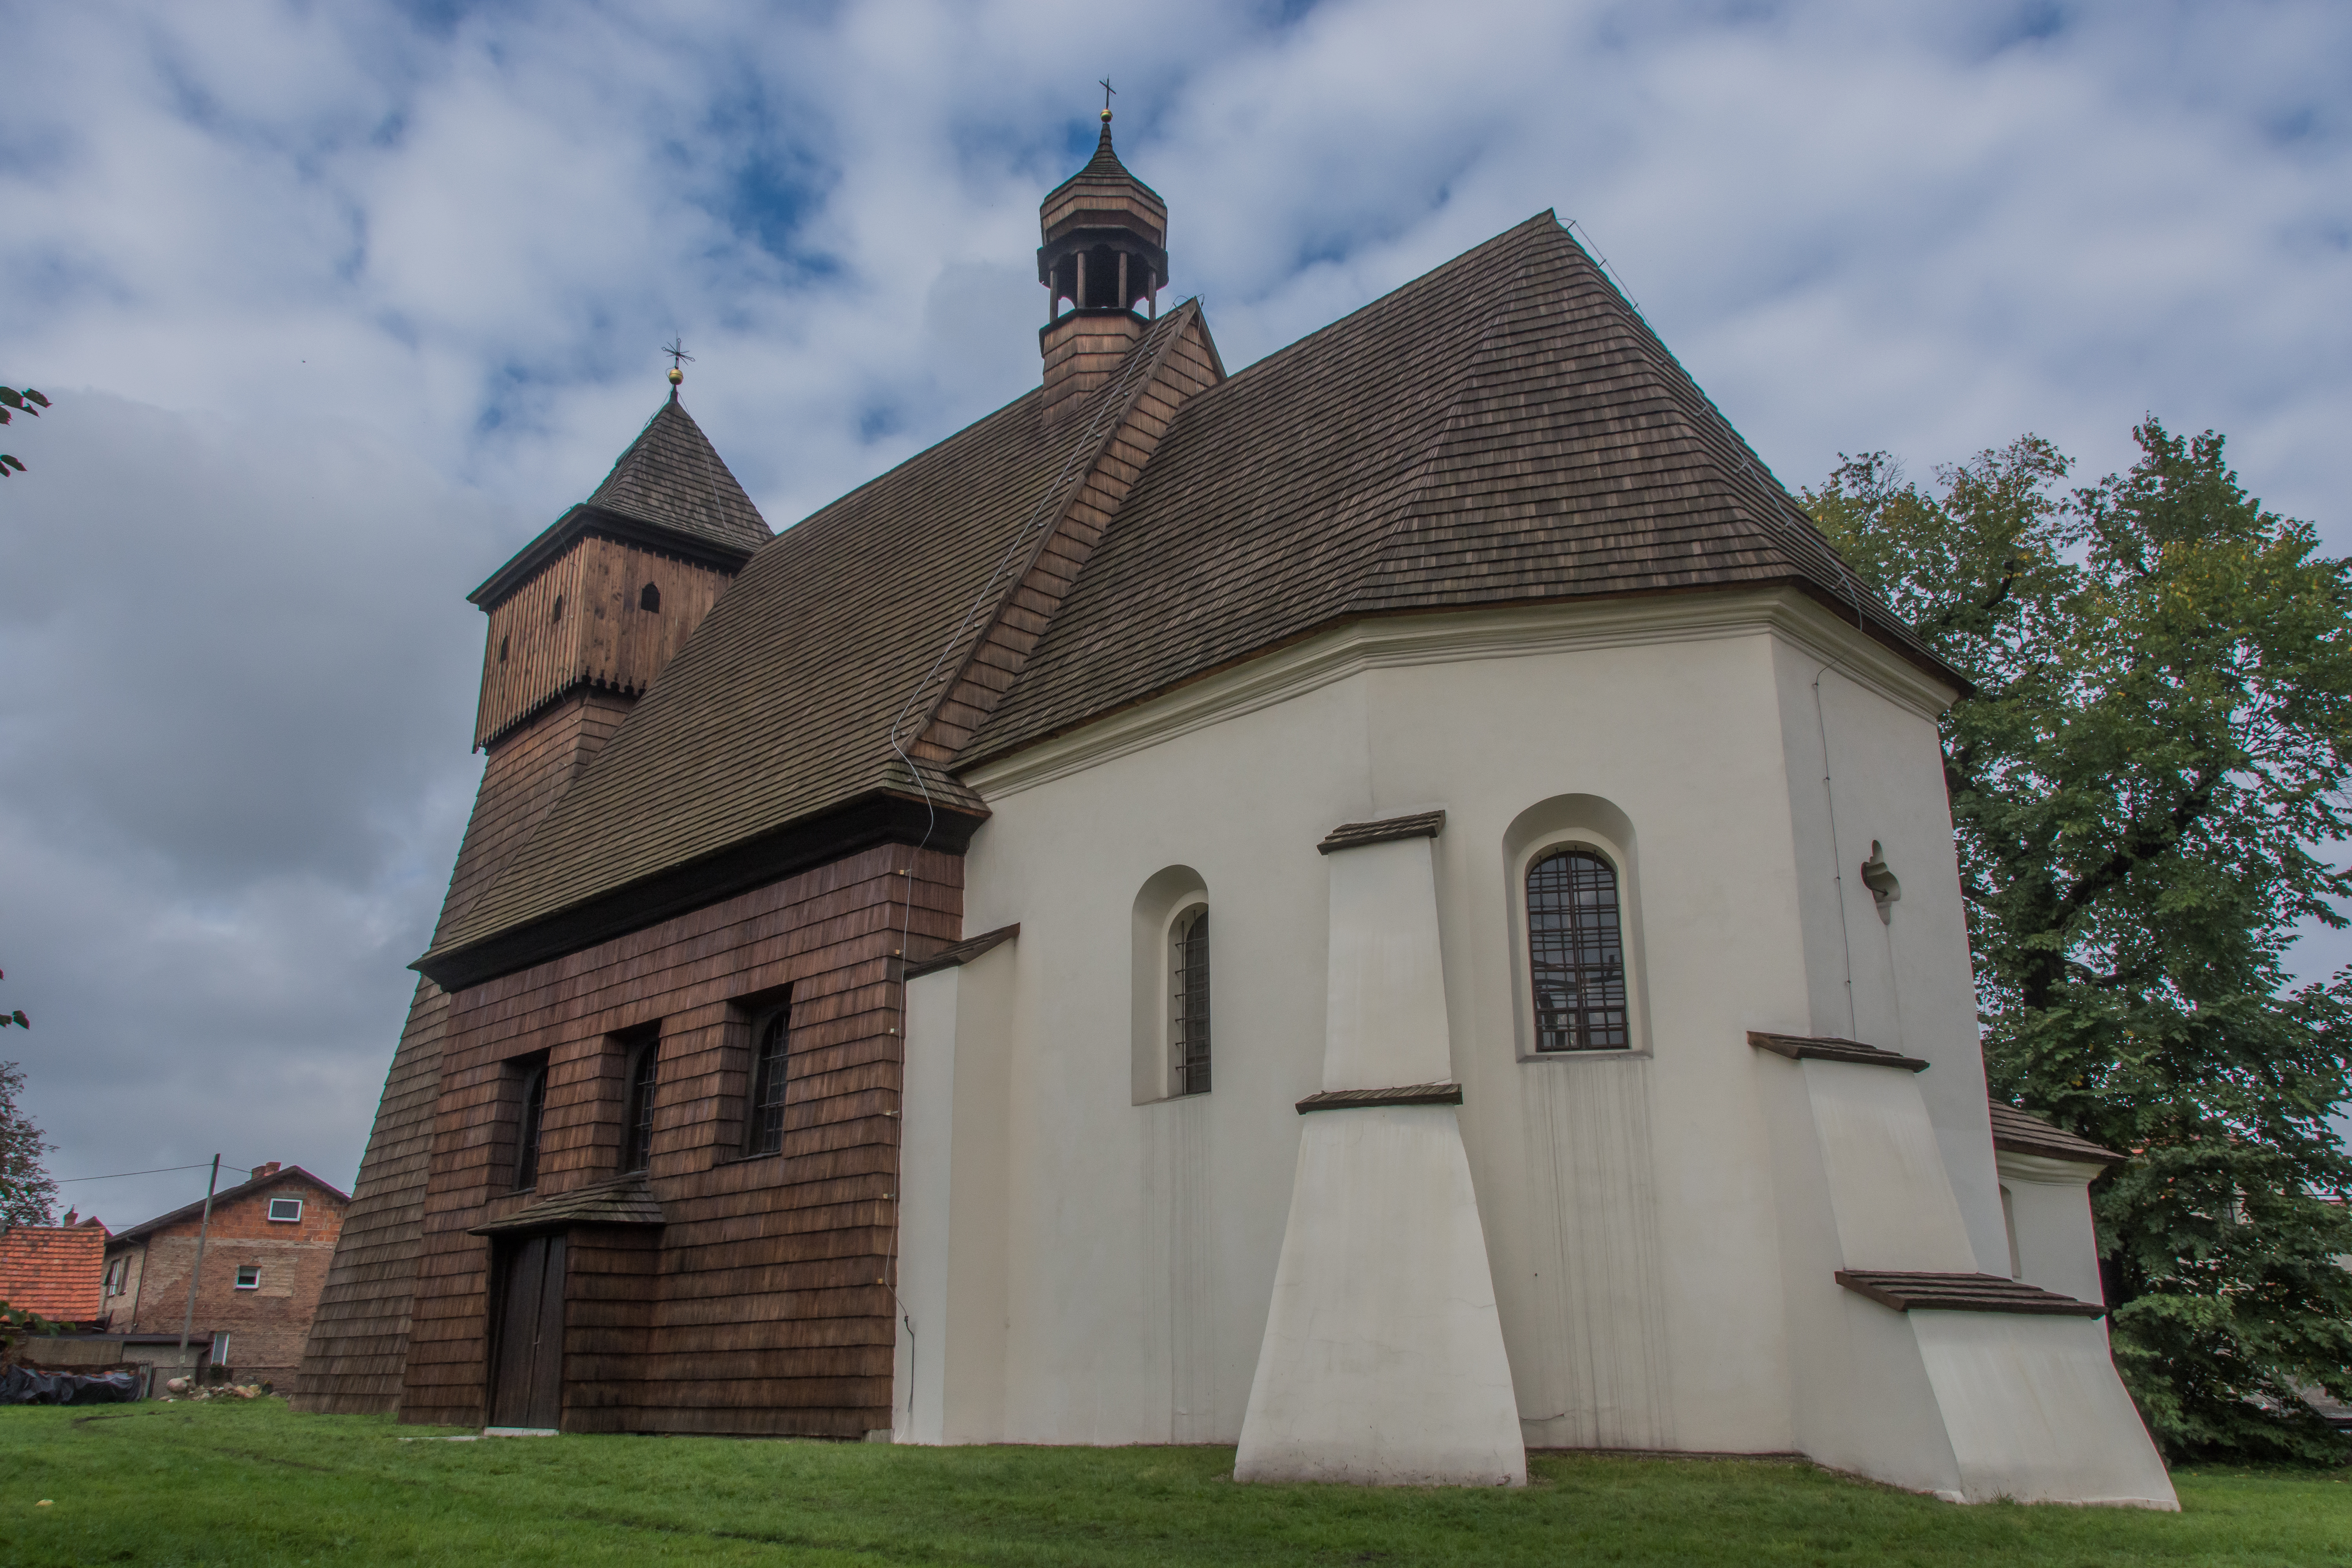 St. George’s Church in Ostropa